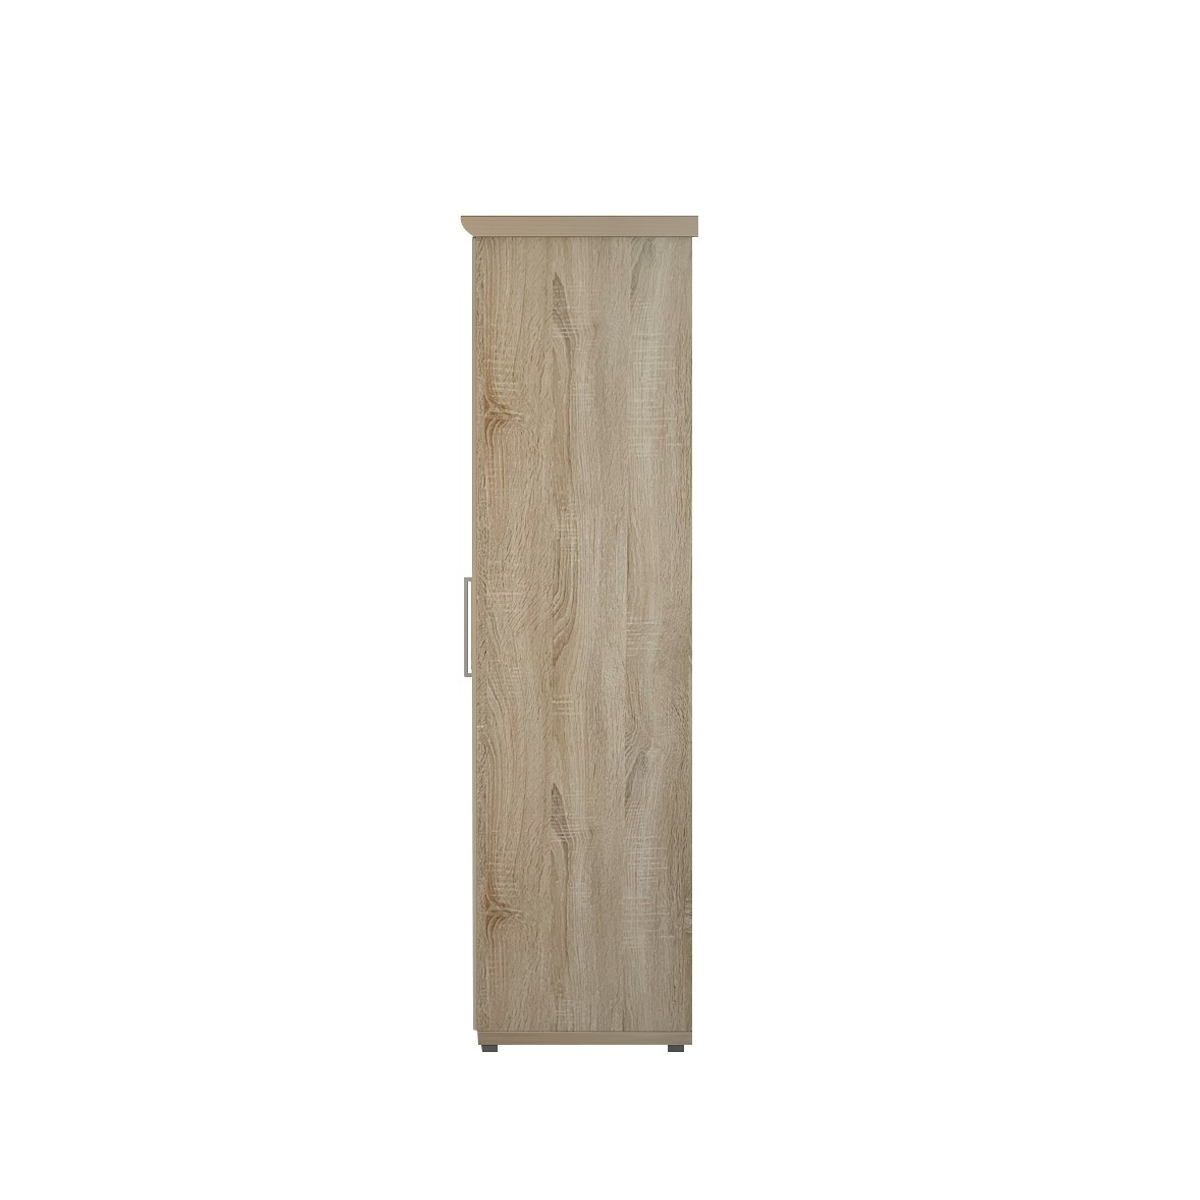 Interiax Kledingkast 'Mila' 4 deuren Sonoma (183x160x52cm)